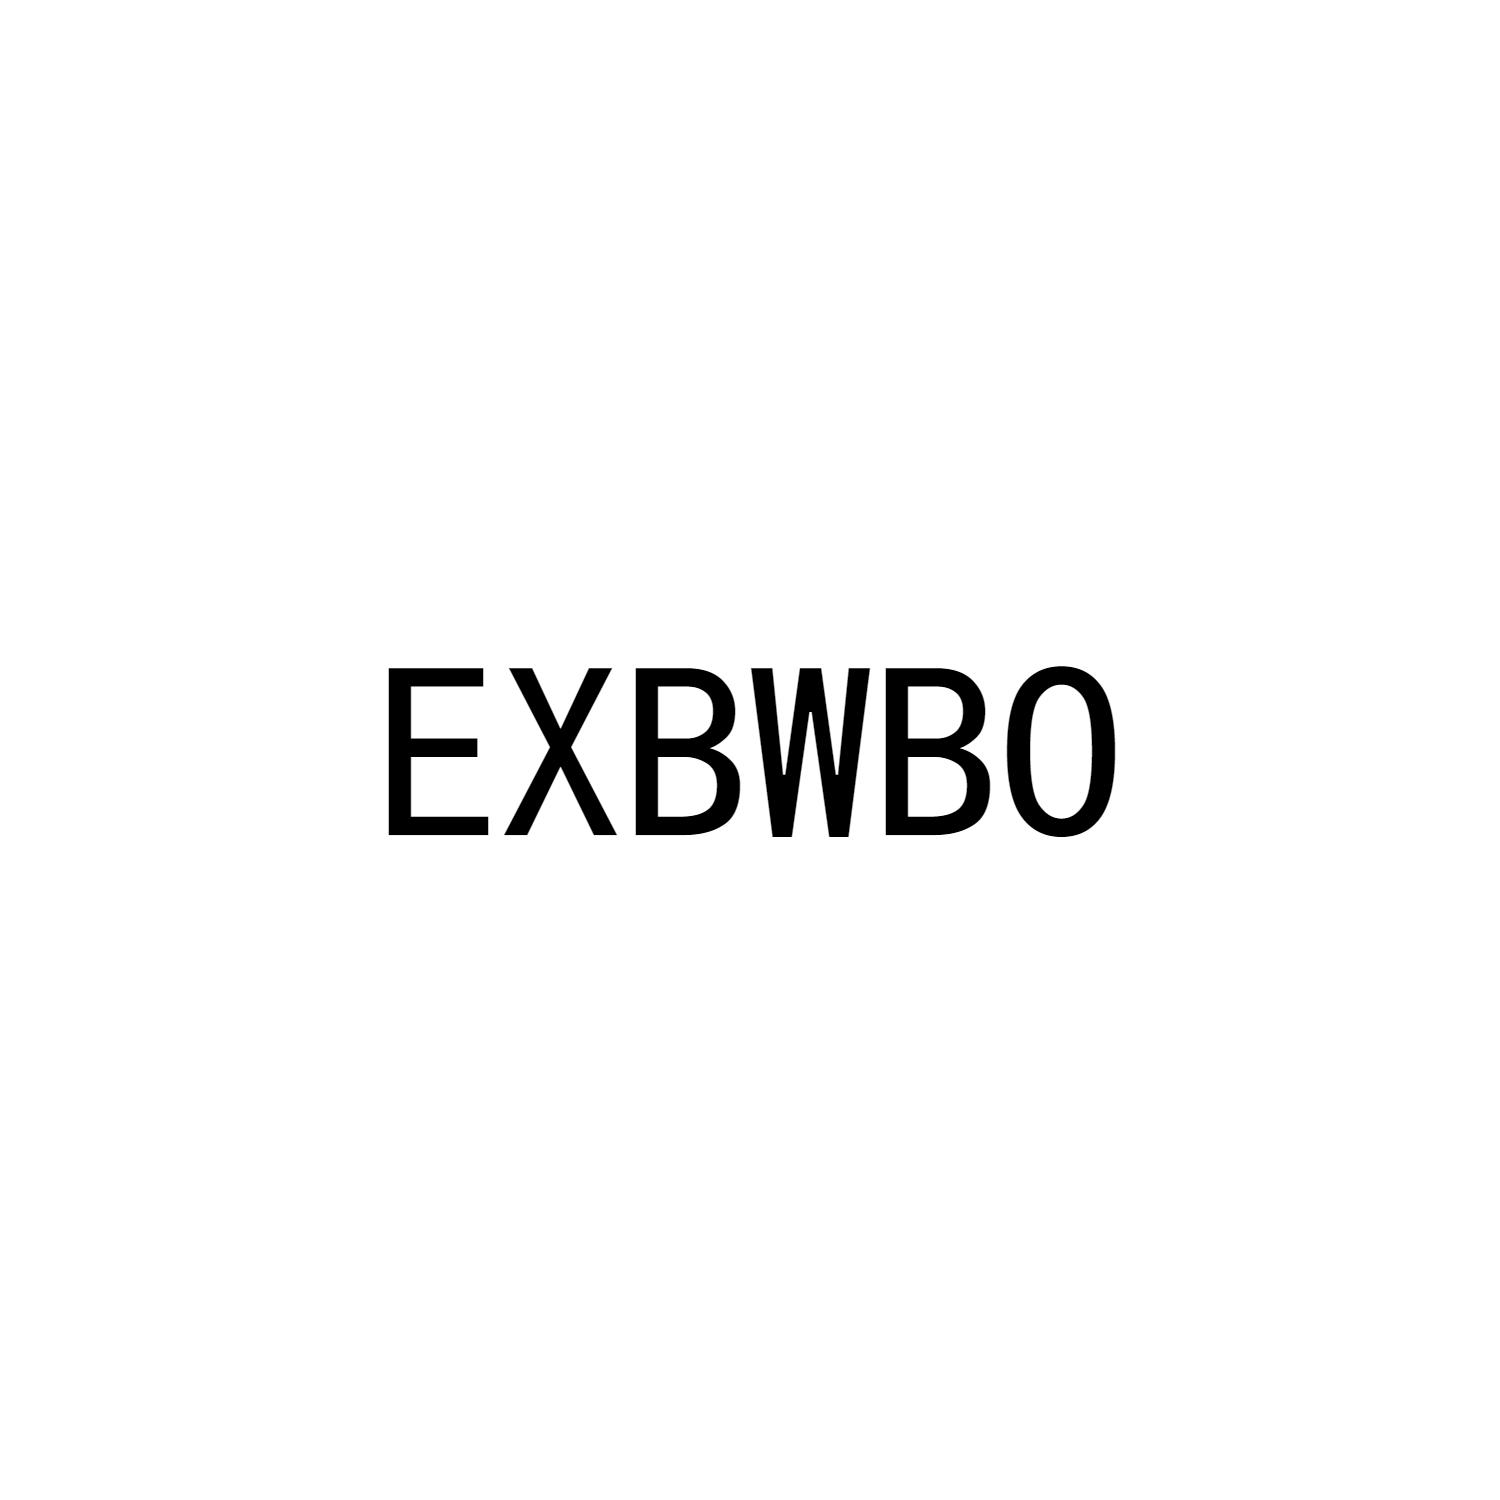 EXBWBO